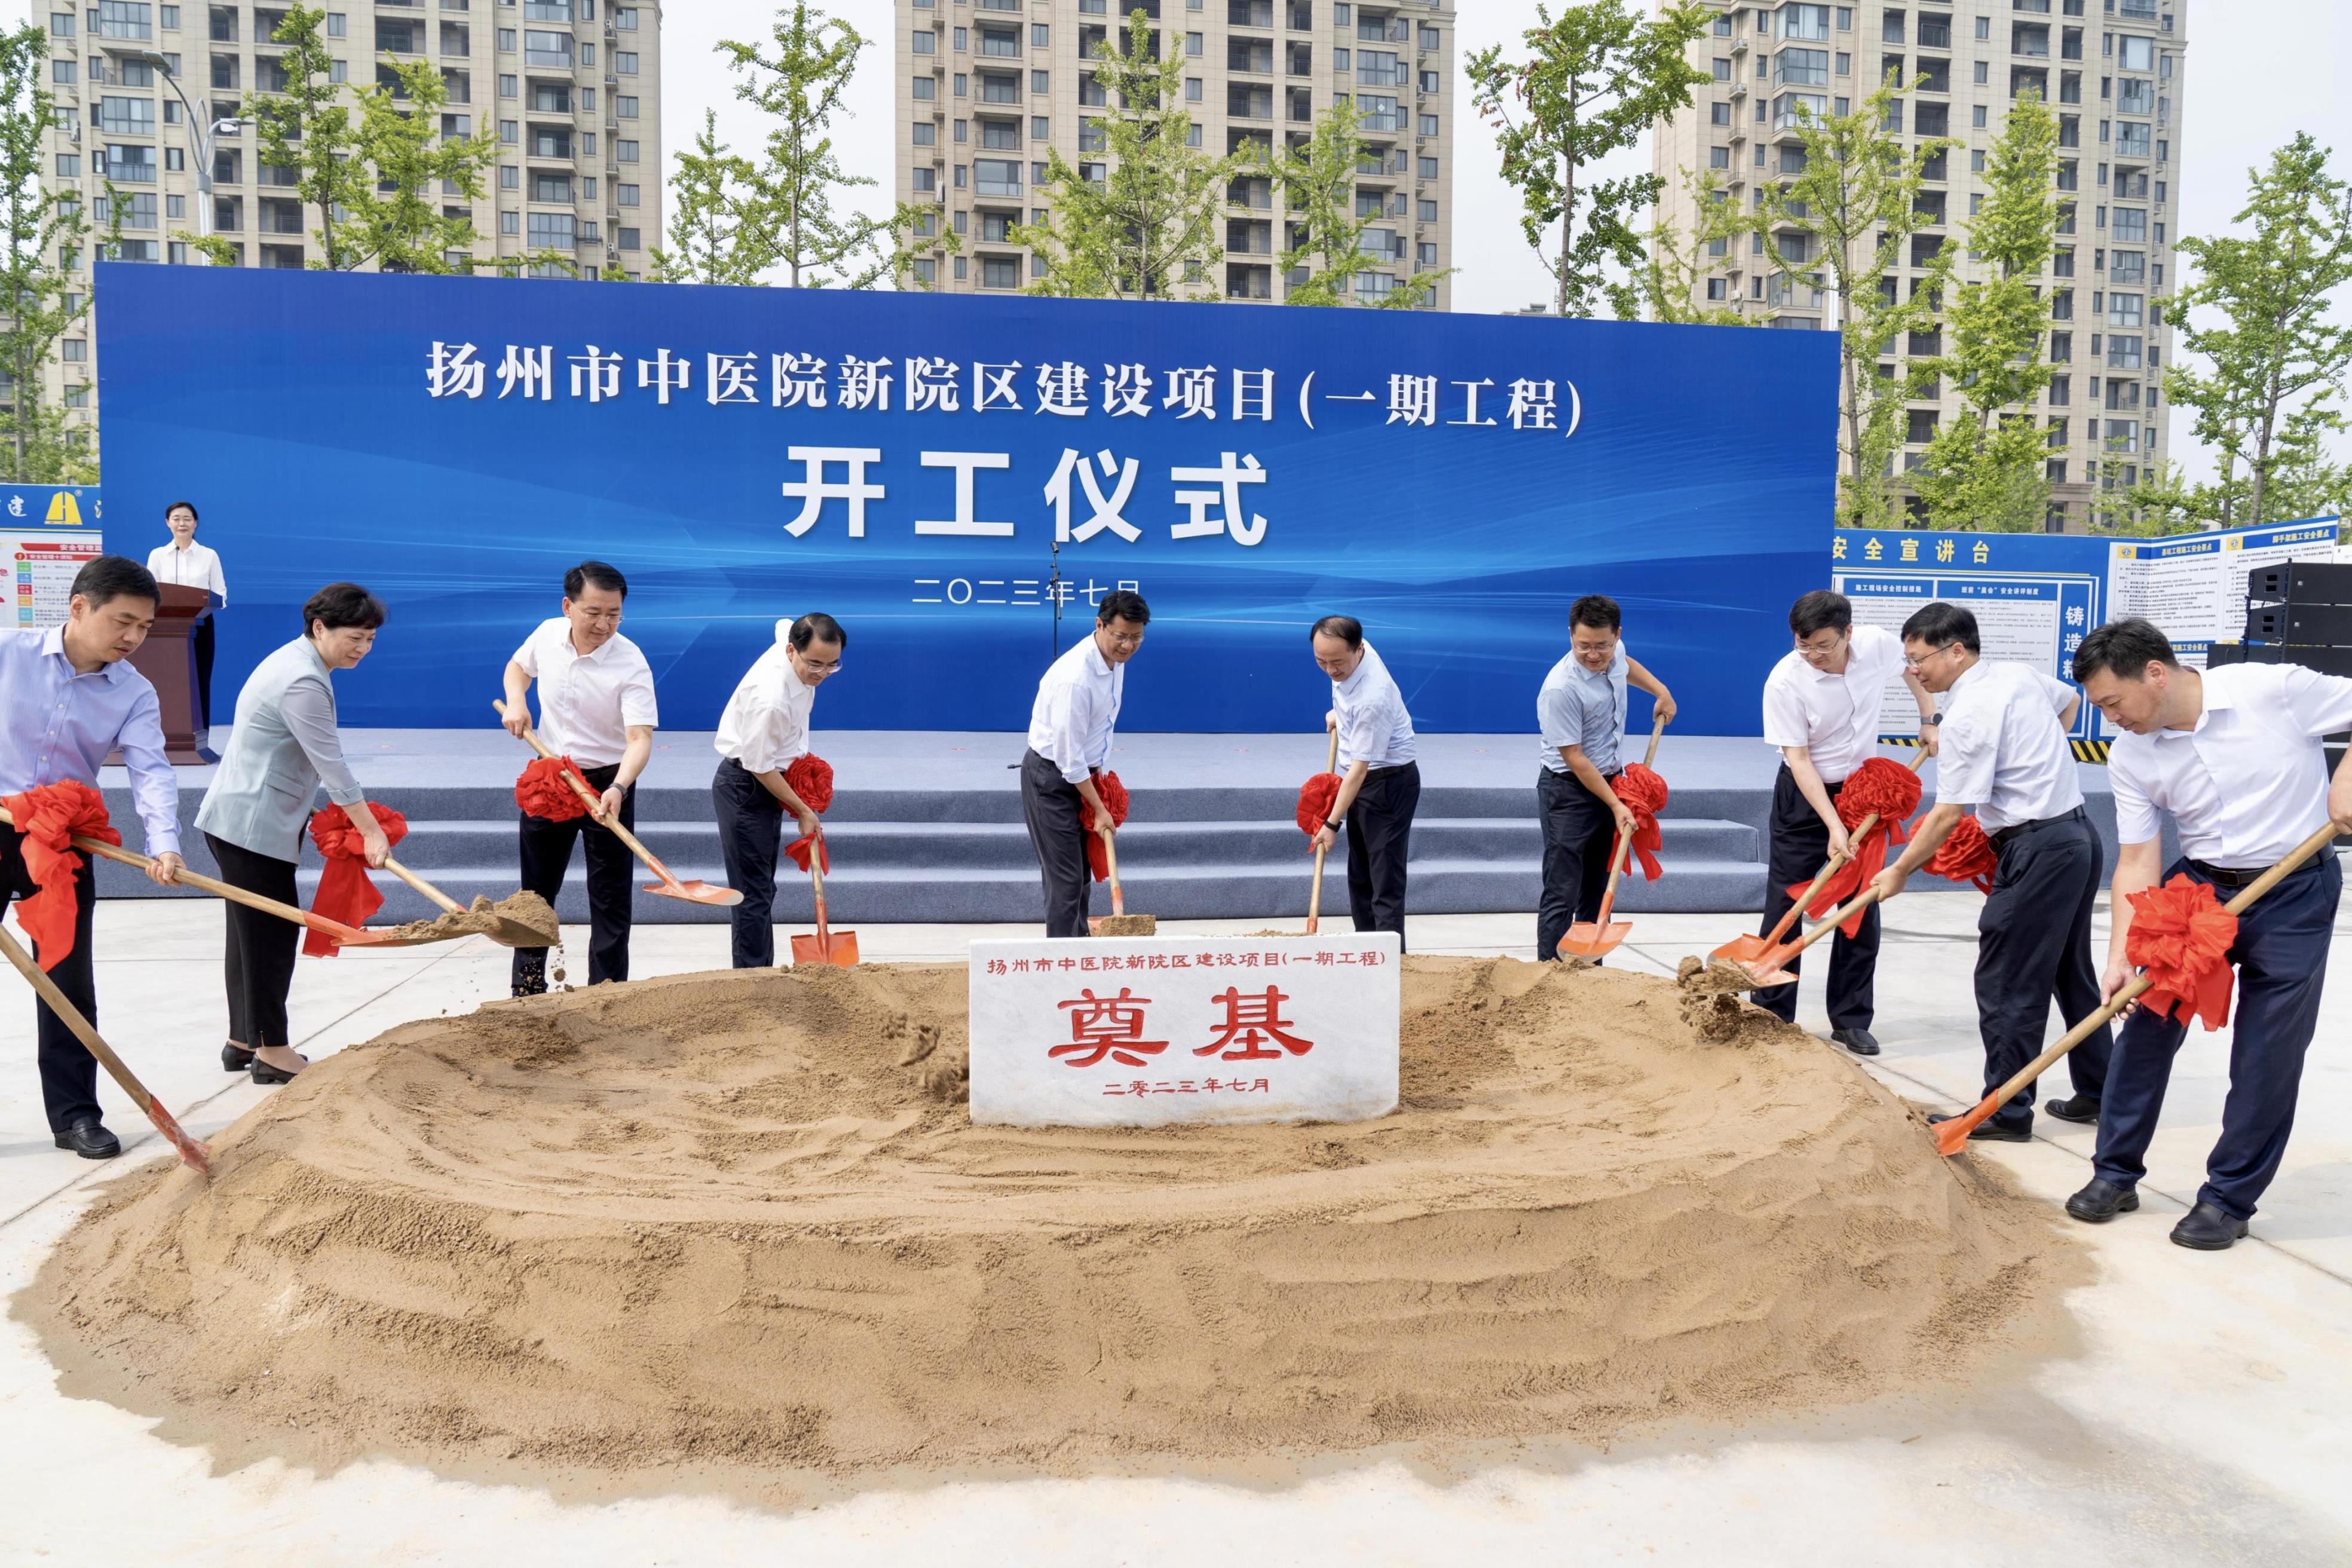 图1-1扬州市中医院新院区建设项目（一期工程）举行开工仪式.jpg